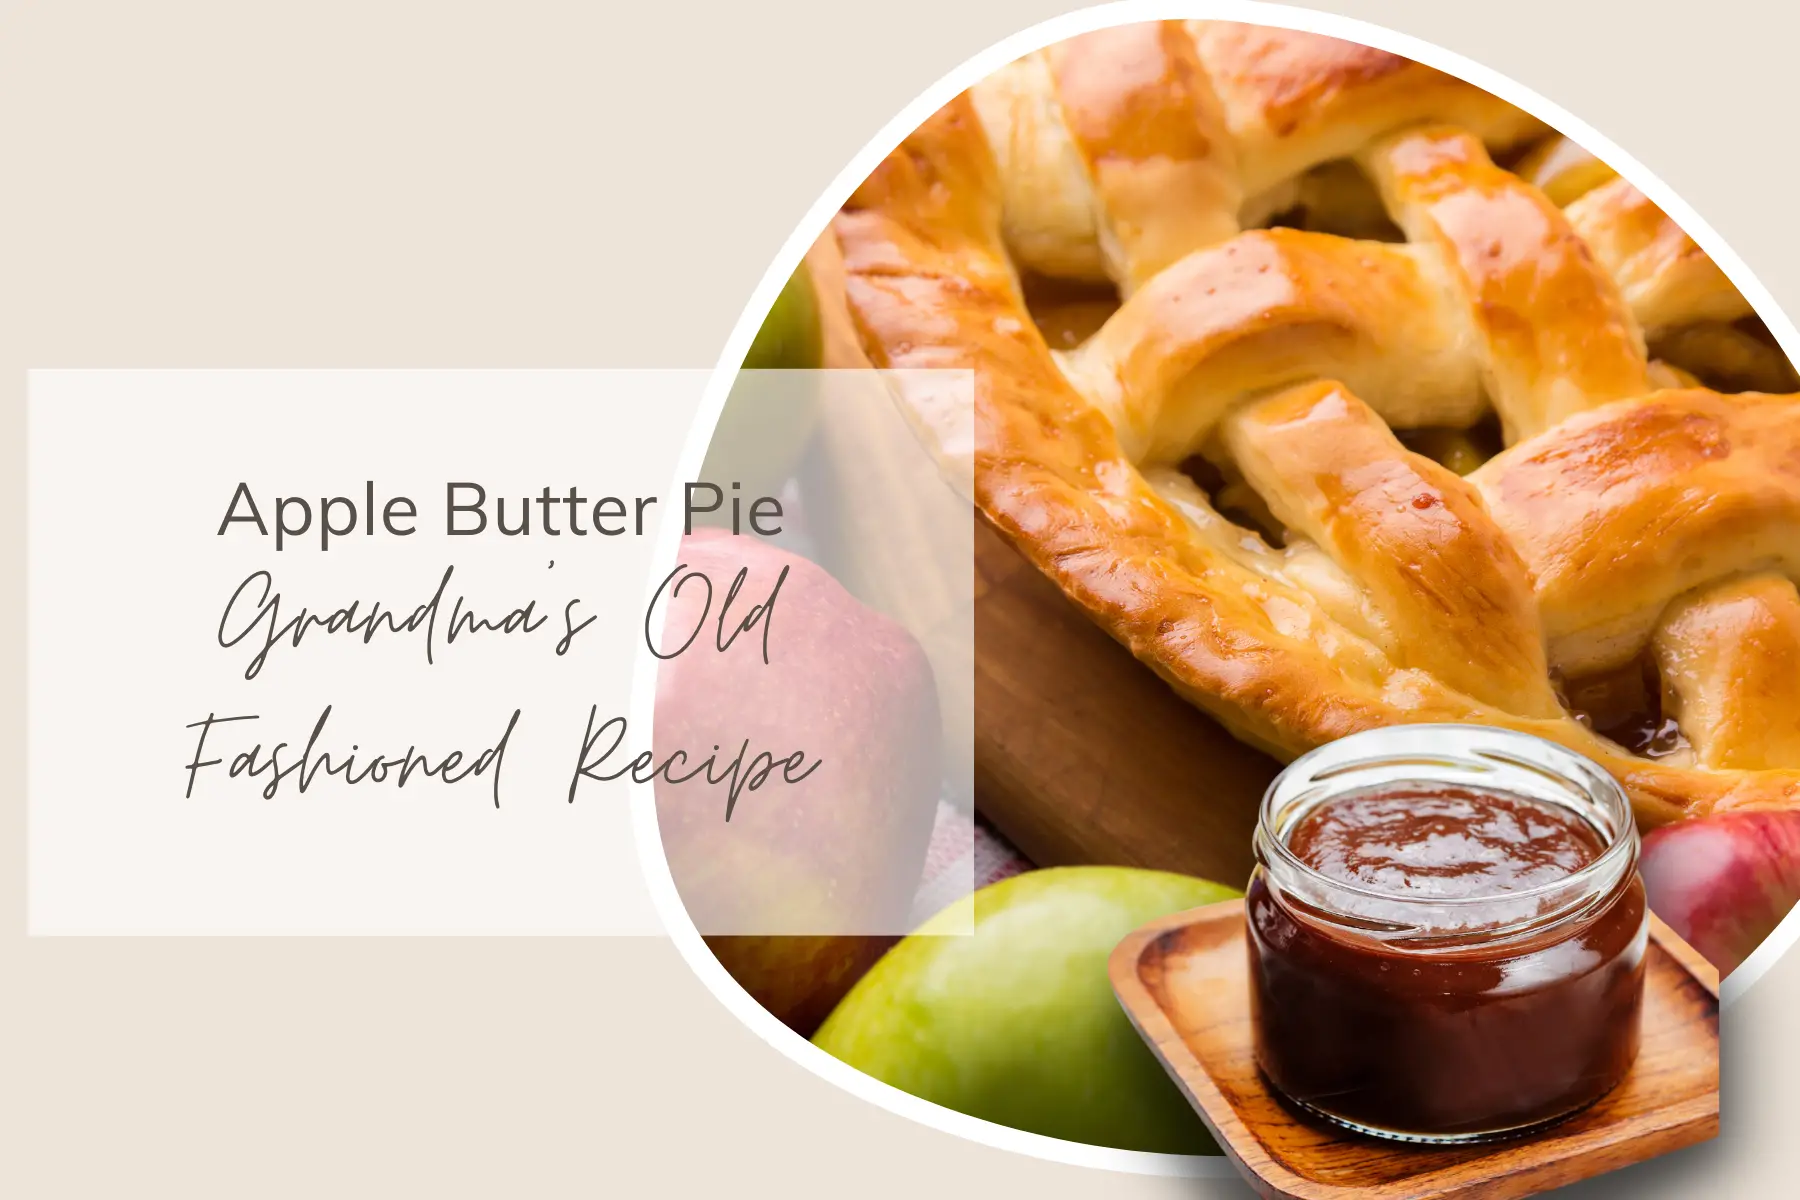 Apple Butter Pie: Grandma’s Old Fashioned Recipe